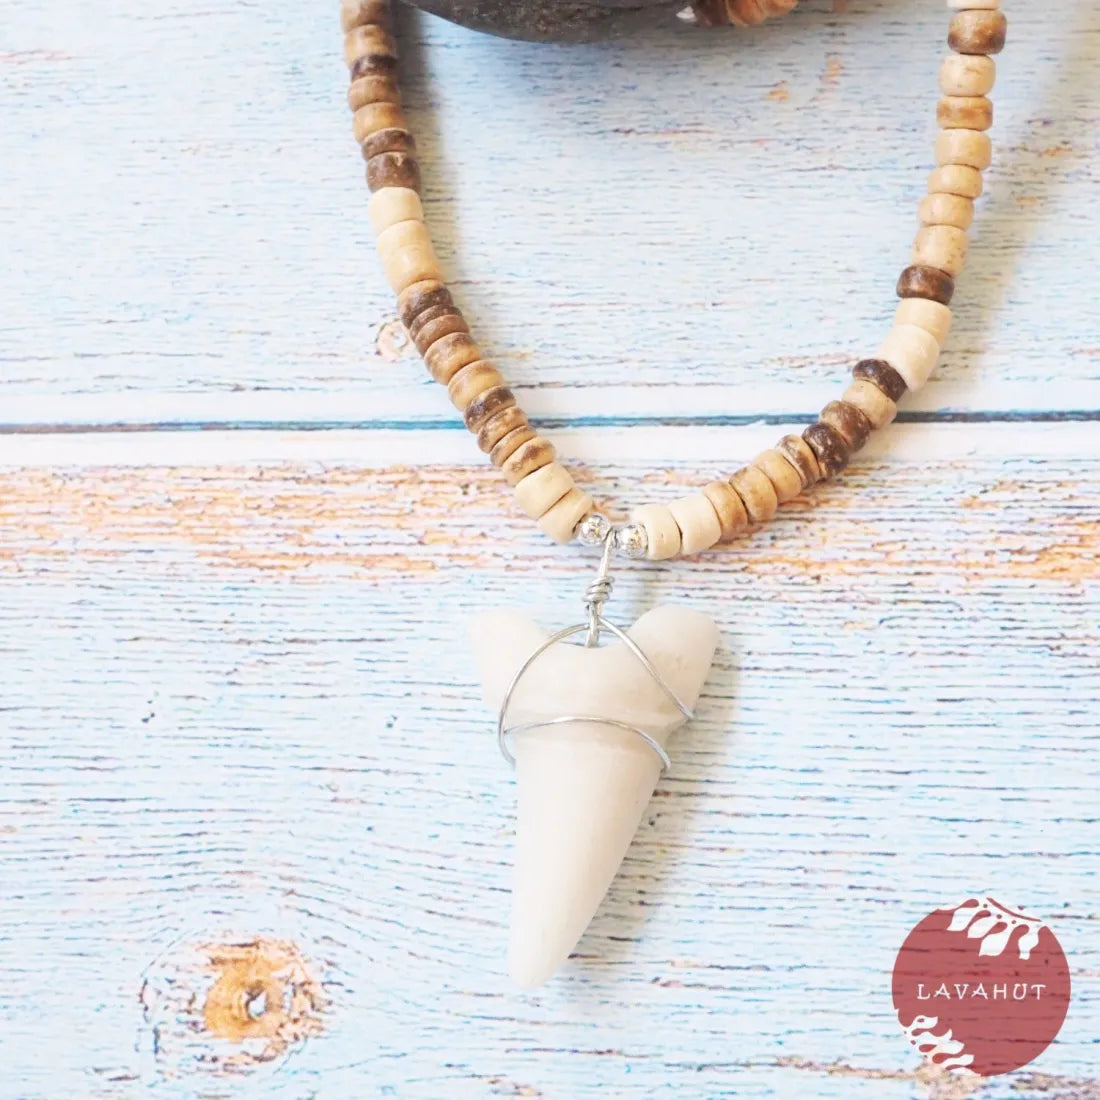 Mako Shark Tooth Pendant Hawaiian Necklace - Made In Hawaii